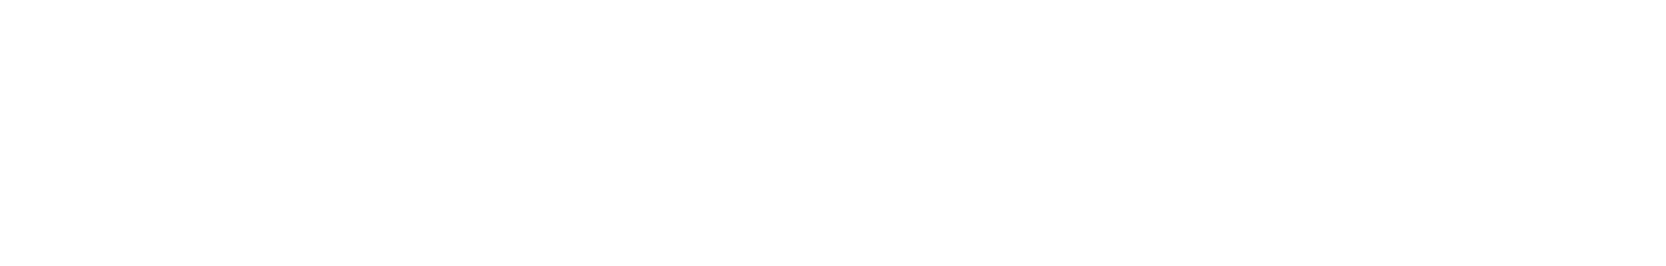 Torrid Logo groß für dunkle Hintergründe (transparentes PNG)